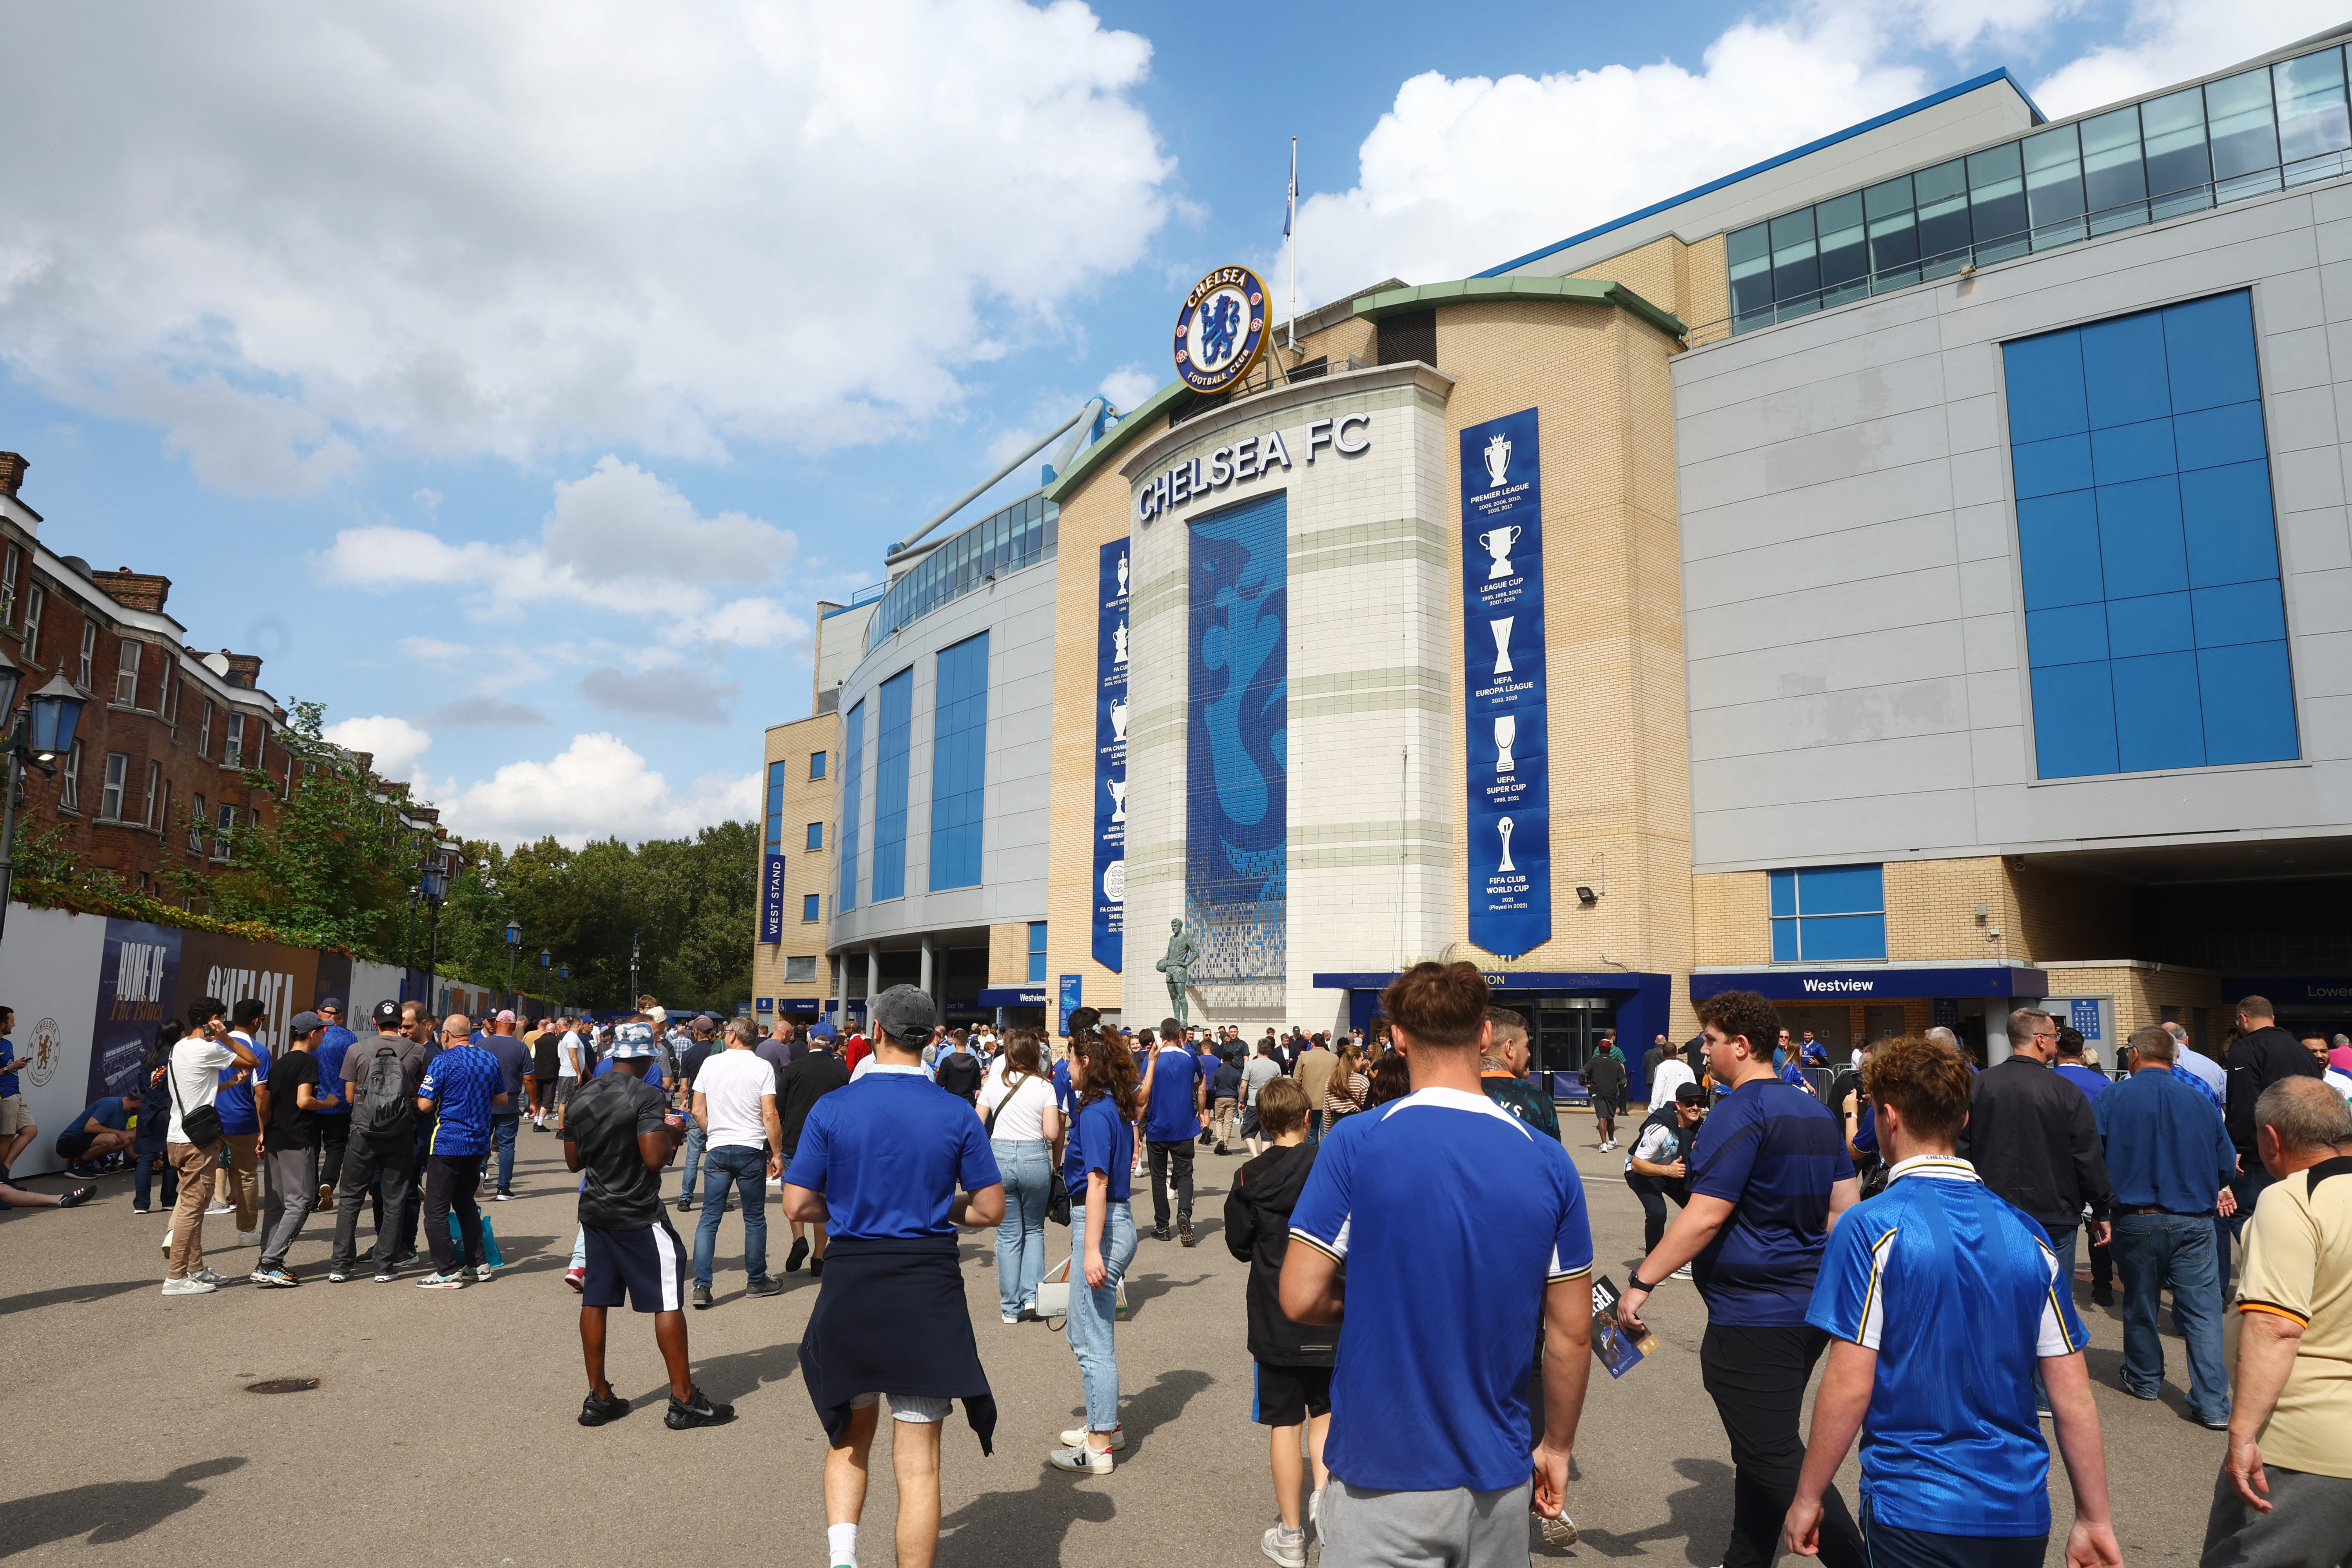 Chelsea spielt seit seiner Gründung im Jahr 1905 an der Stamford Bridge